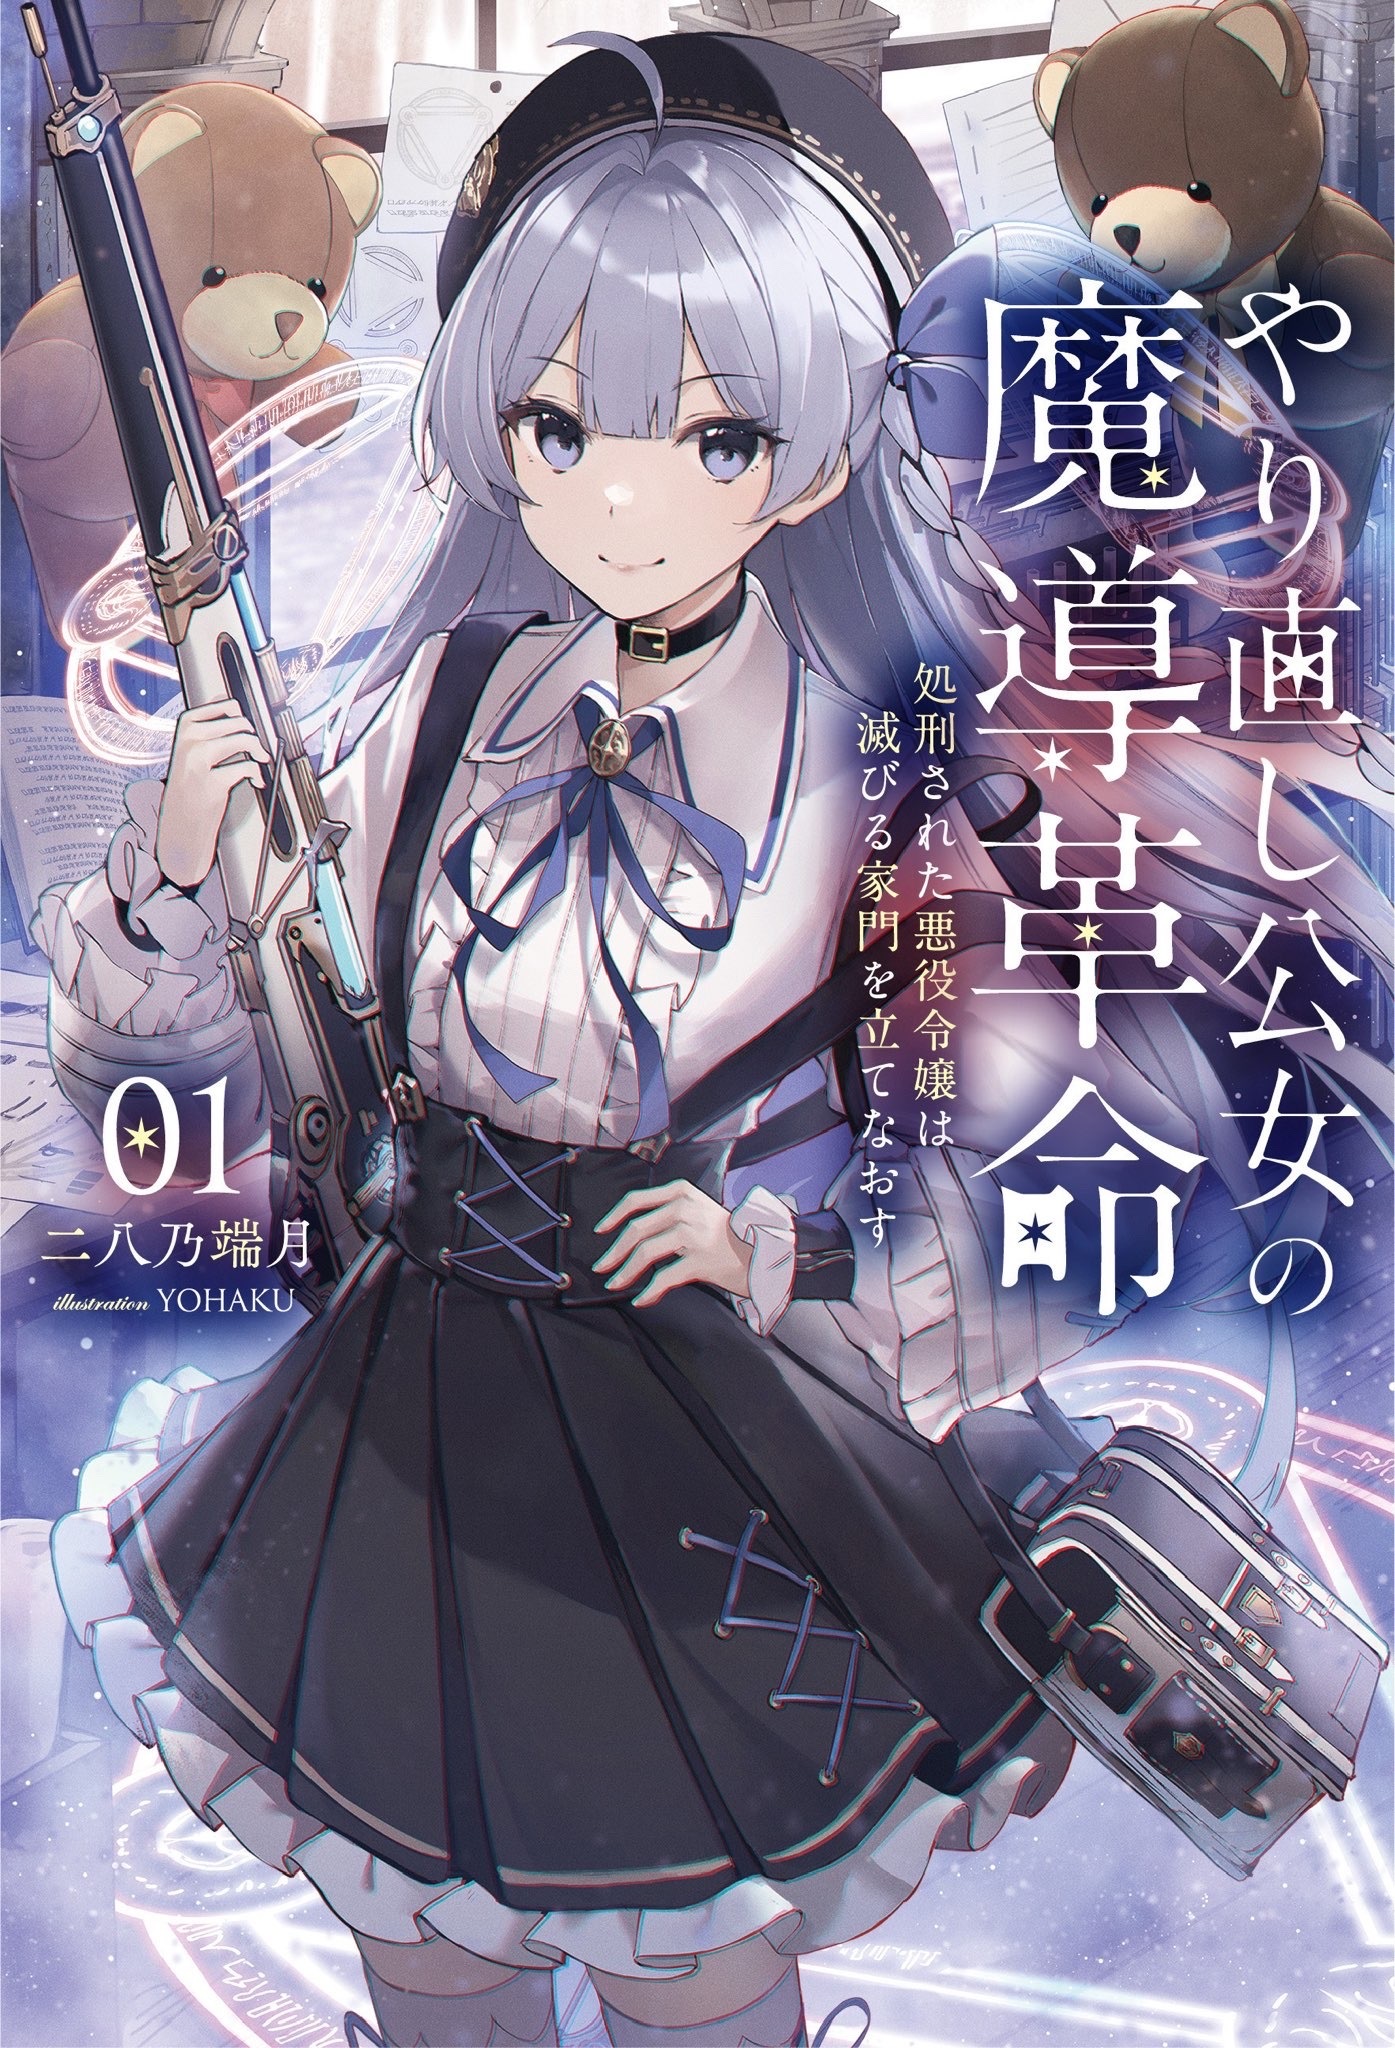 Light novel/Volume 4  The Magical Revolution of the Reincarnated